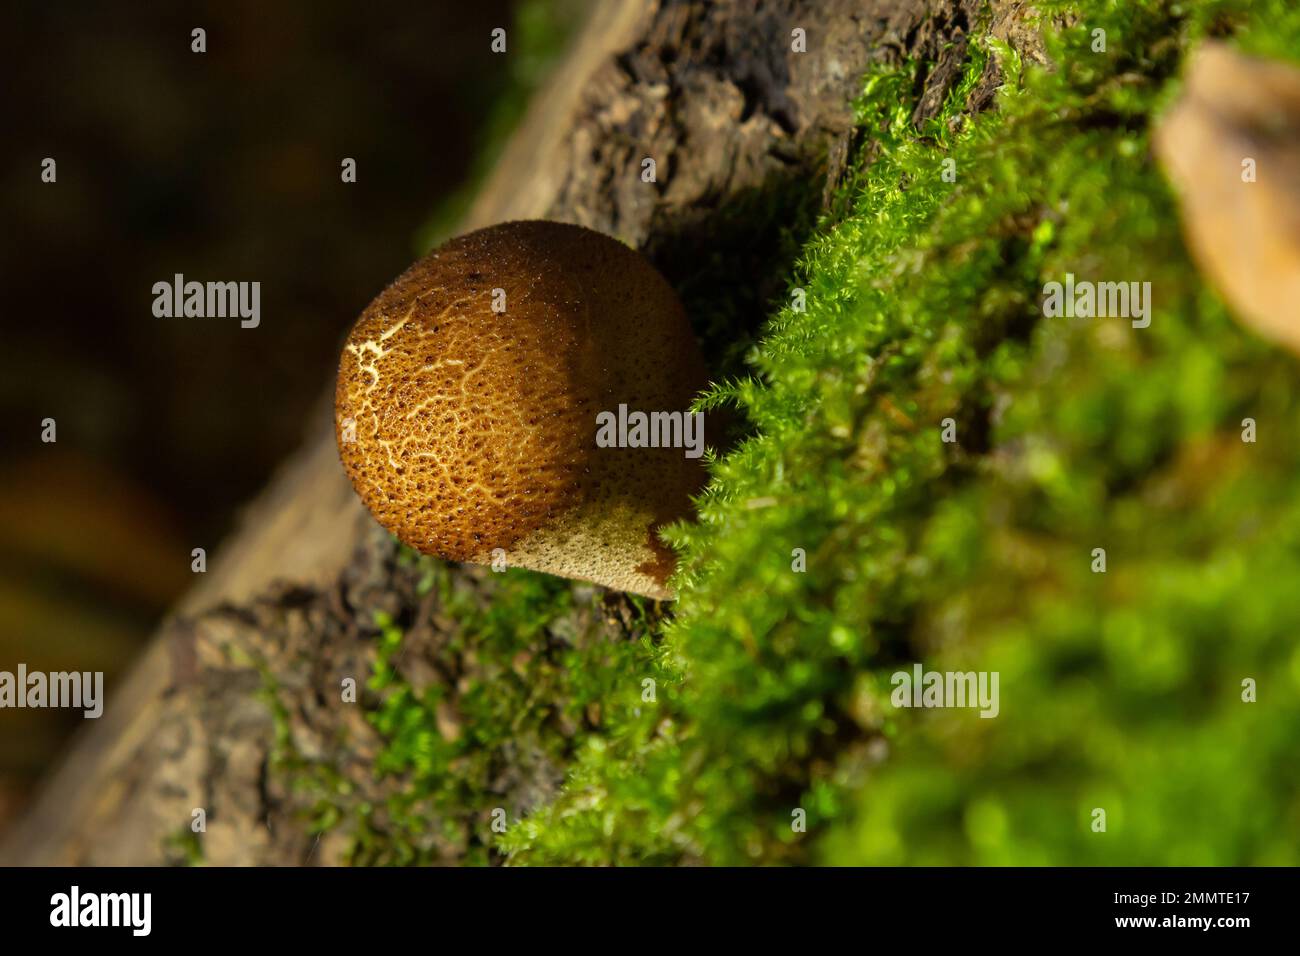 Fungo della foresta. Comune fungo discendente - Lycoperdon perlatum - che cresce in muschio verde nella foresta autunnale. Foto Stock